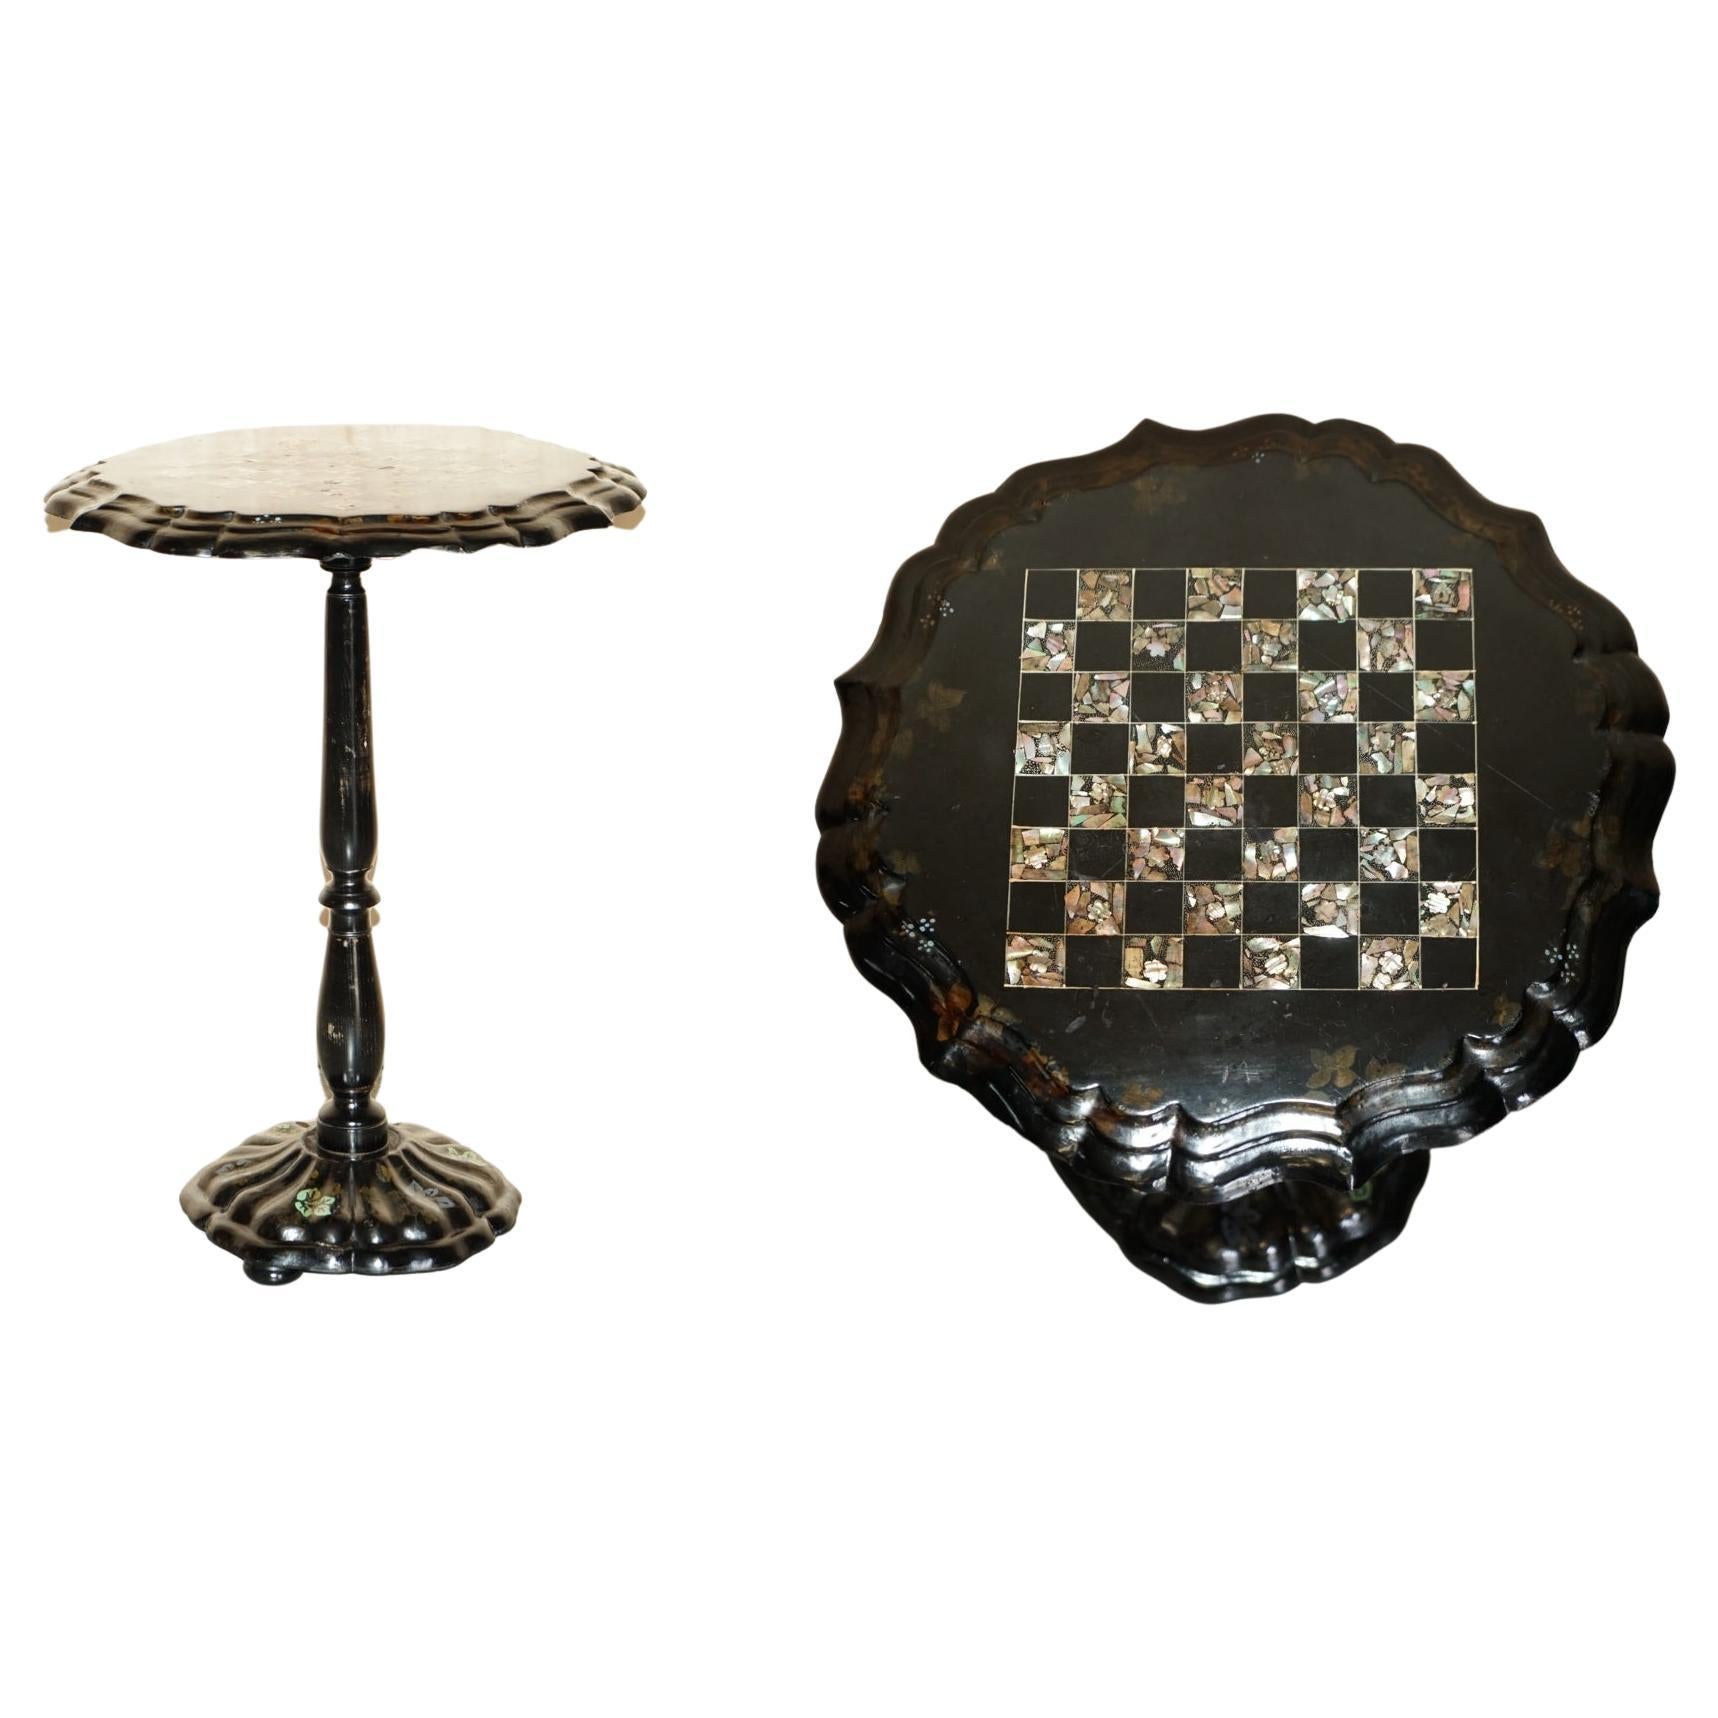 Superbe table de jeu d'échecs victorienne ancienne de 1860 en laque noire et nacre